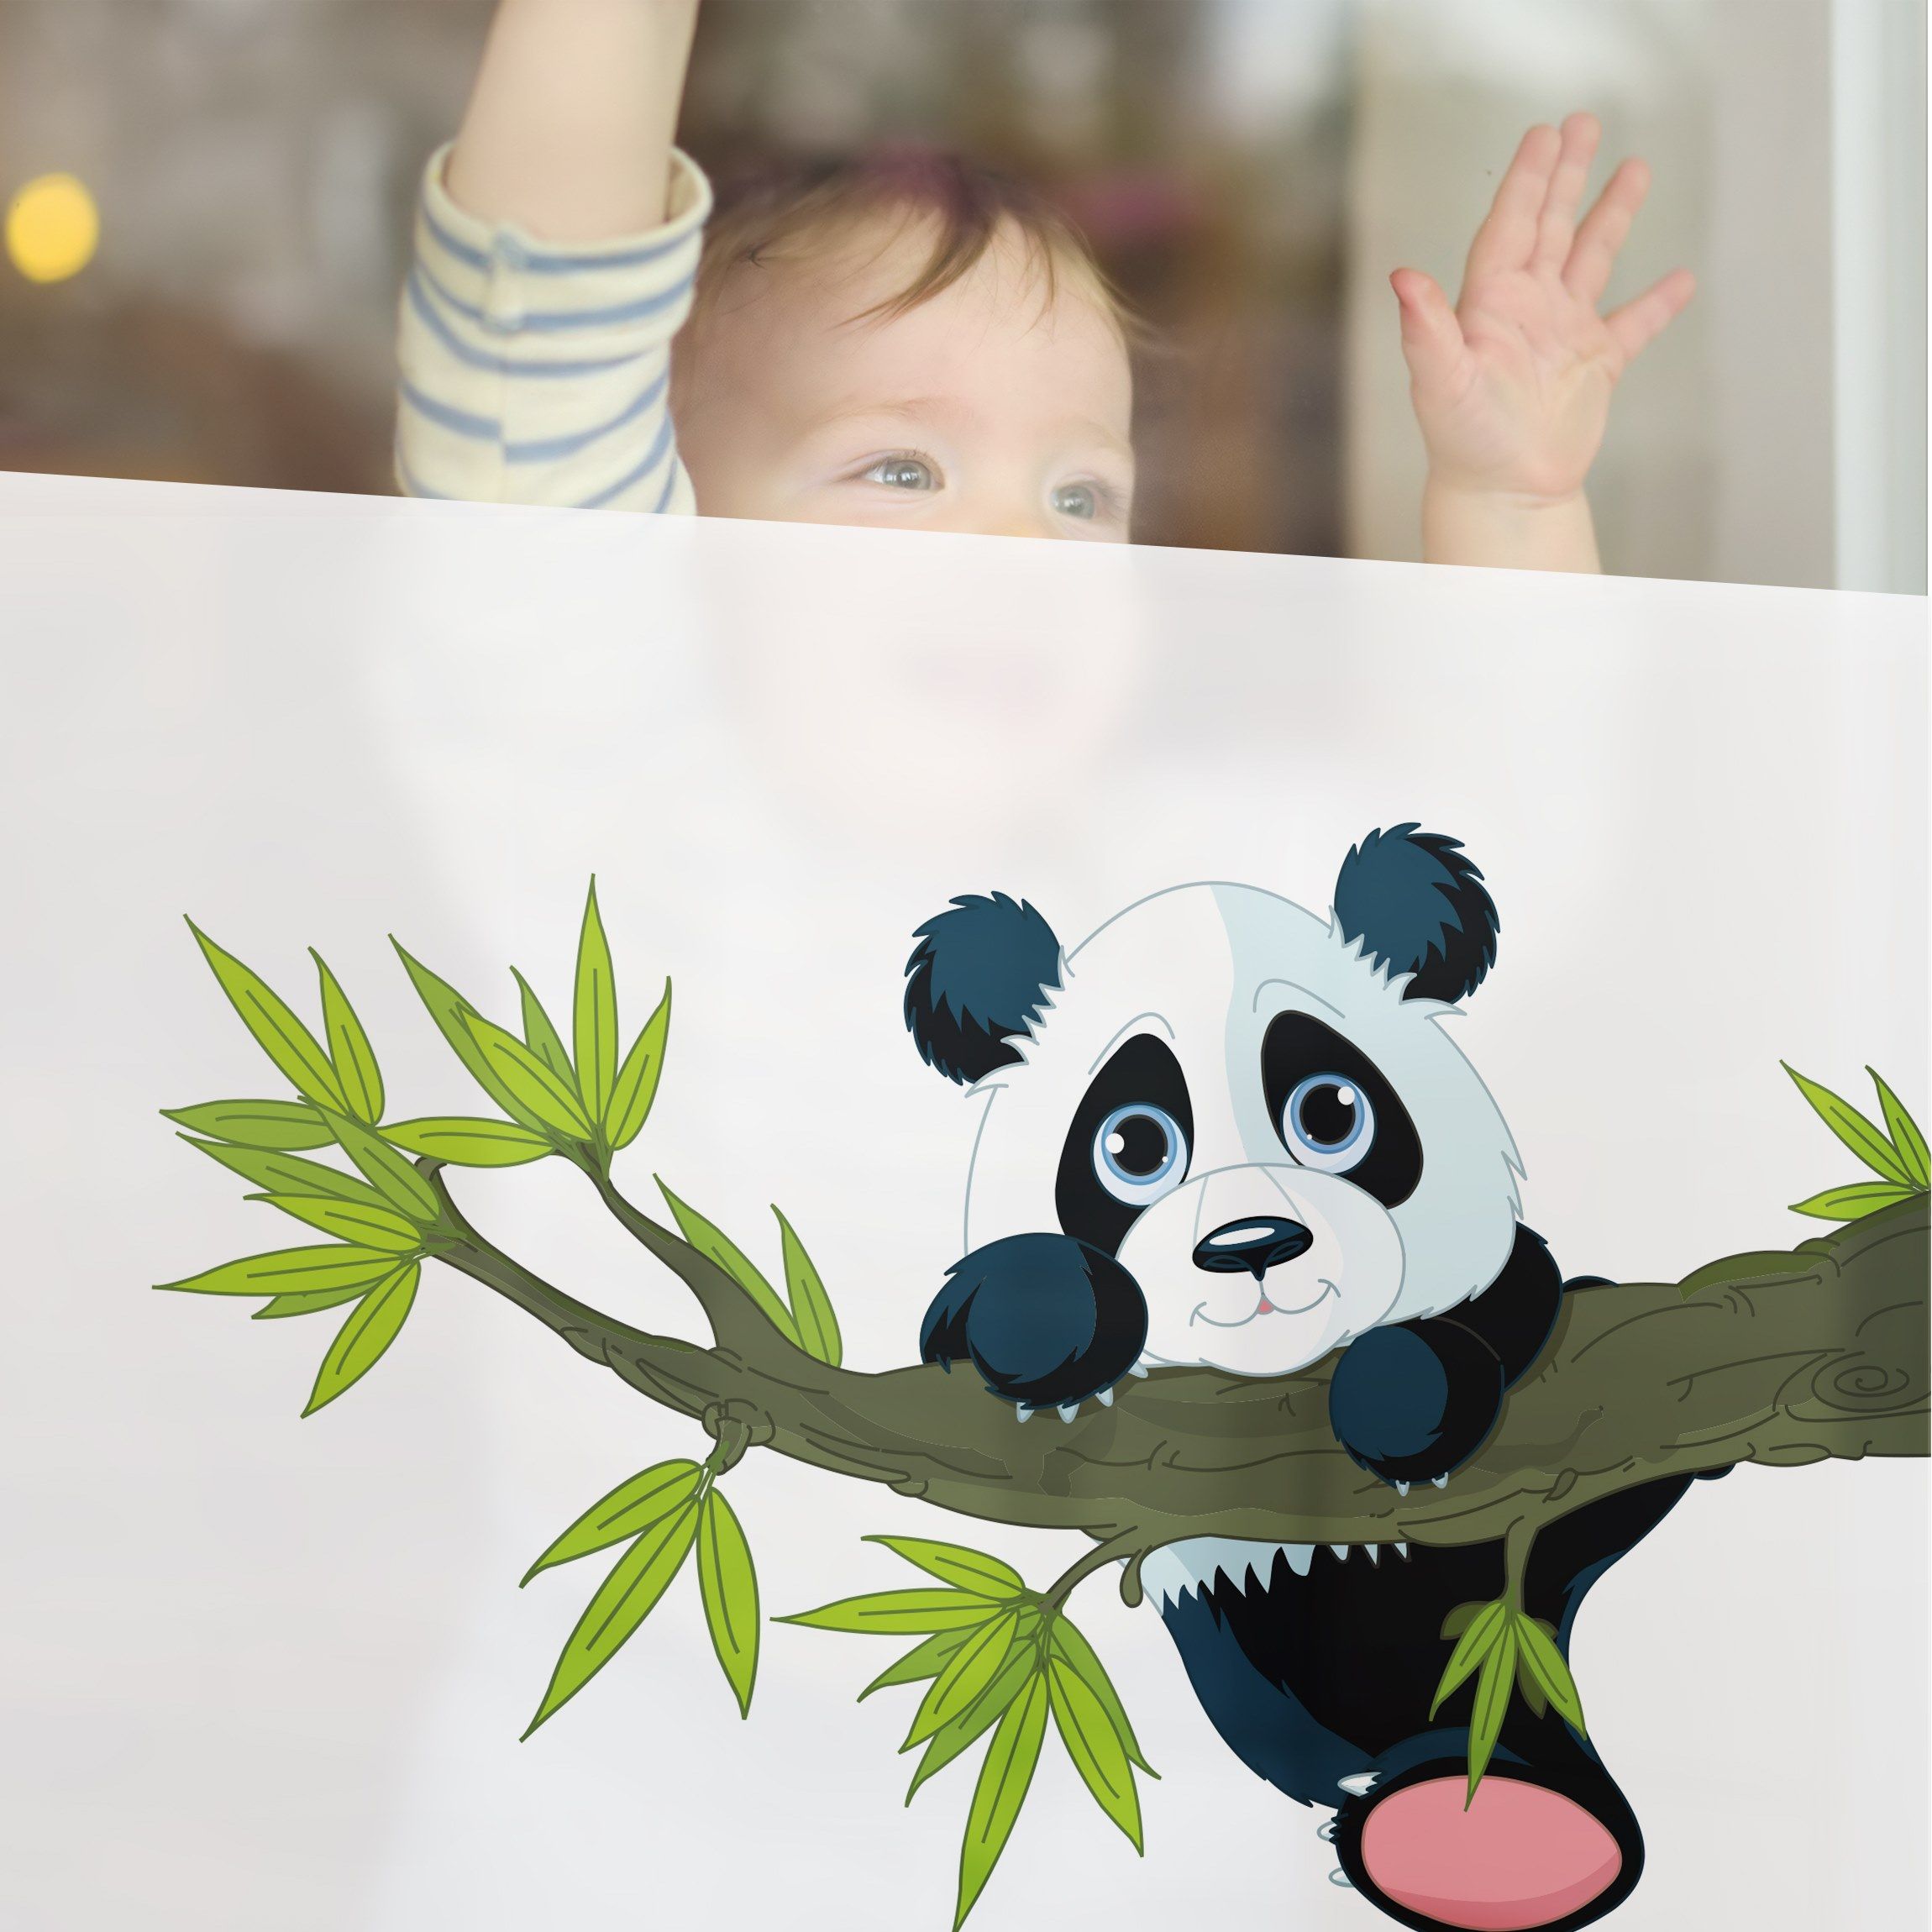 Fensterfolie - Sichtschutz - Kletternder Panda - Fensterbilder